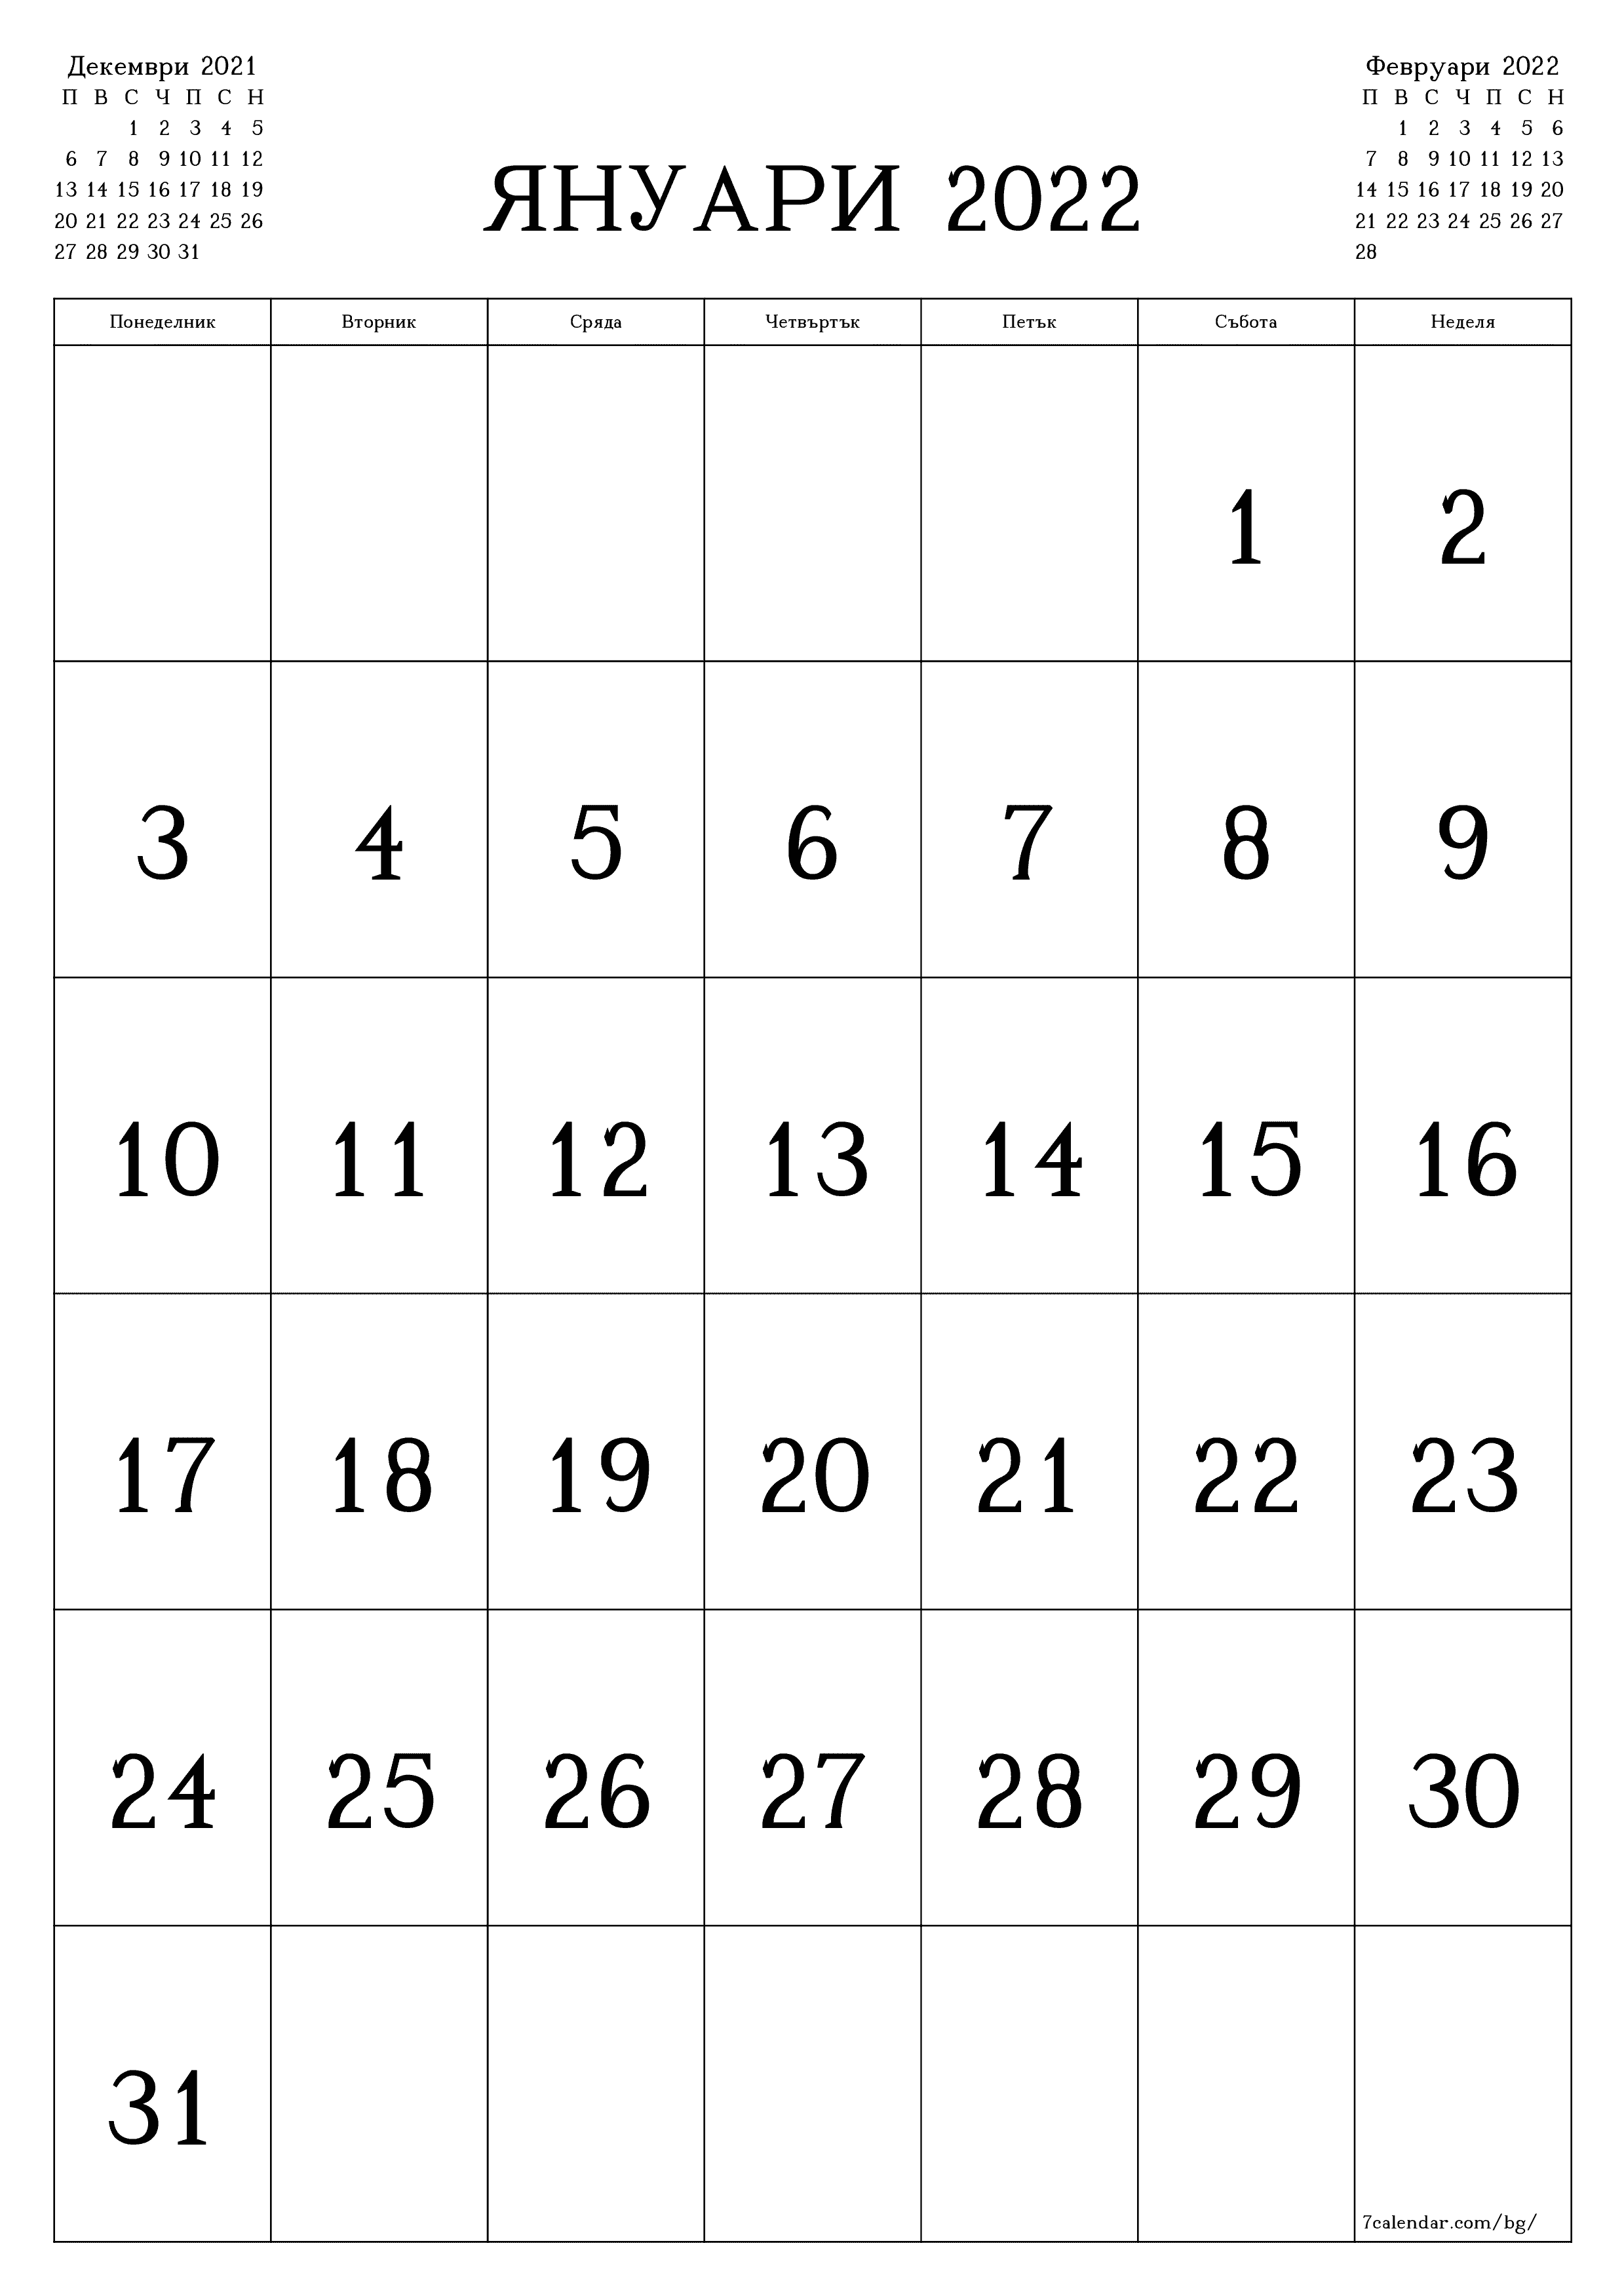 Празен месечен календар за месец Януари 2022 запишете и отпечатайте в PDF PNG Bulgarian - 7calendar.com